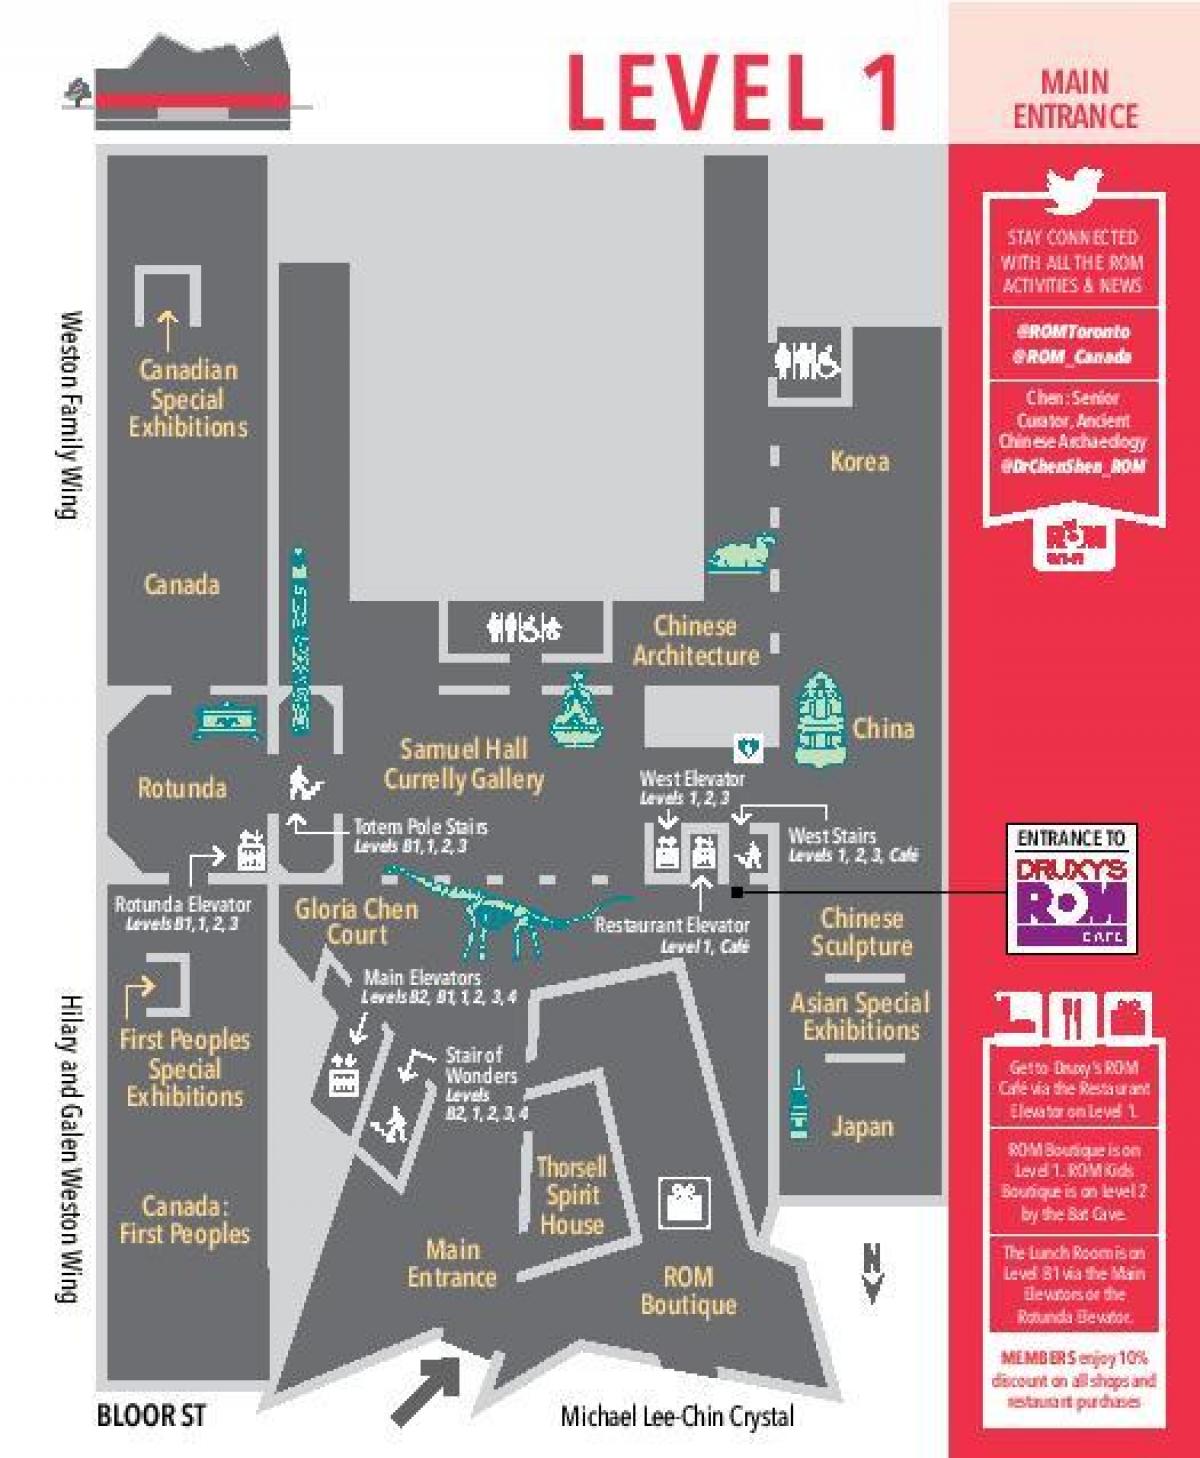 Peta dari Royal Ontario Museum tingkat 1